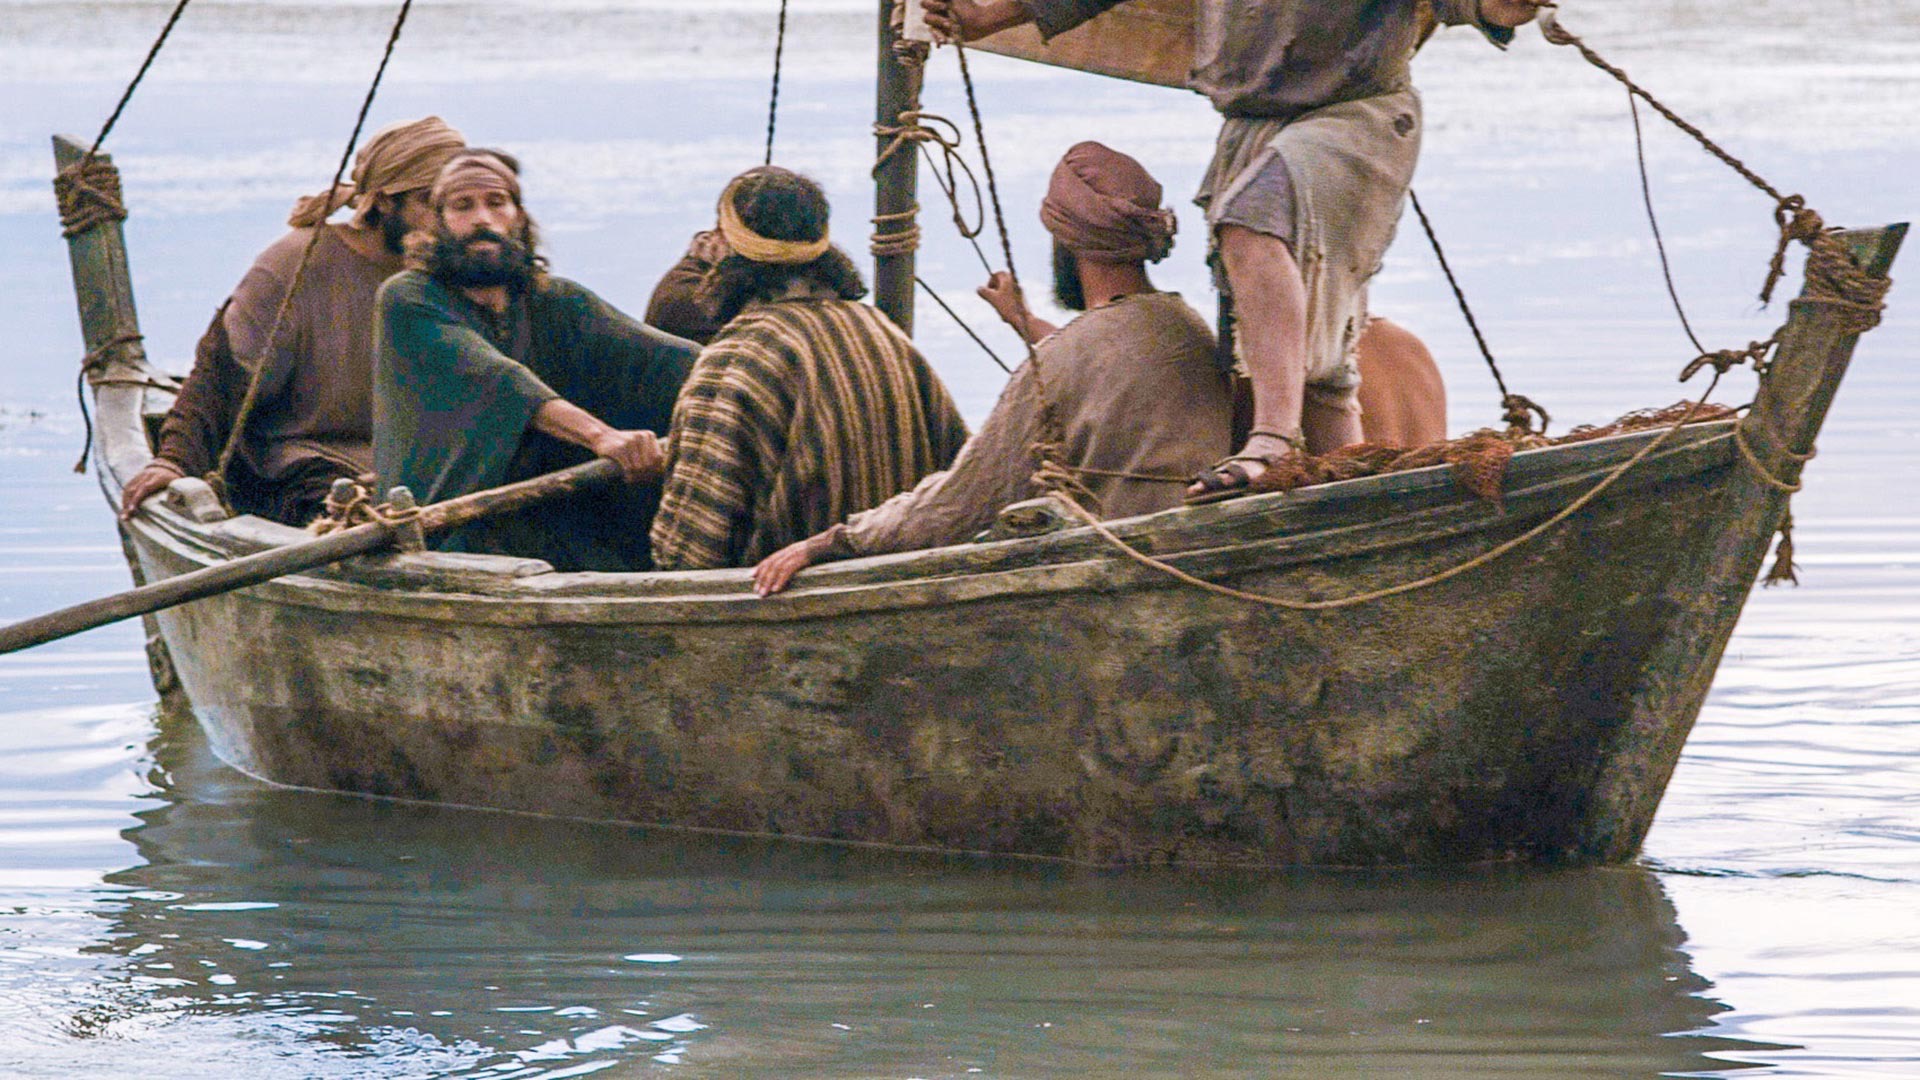 Четверо в лодке. Христос в лодке. Иисус в лодке с учениками. Галилейское море Иисус. Иисус Христос в лодке.